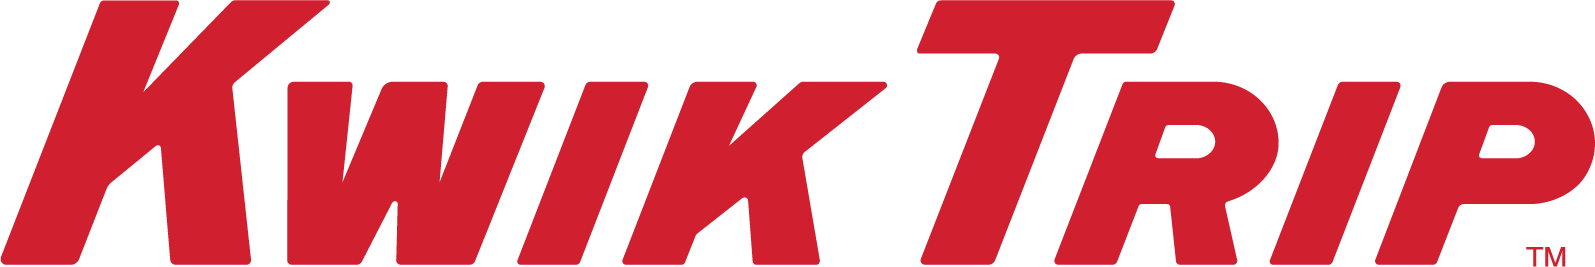 kwik trip logo font